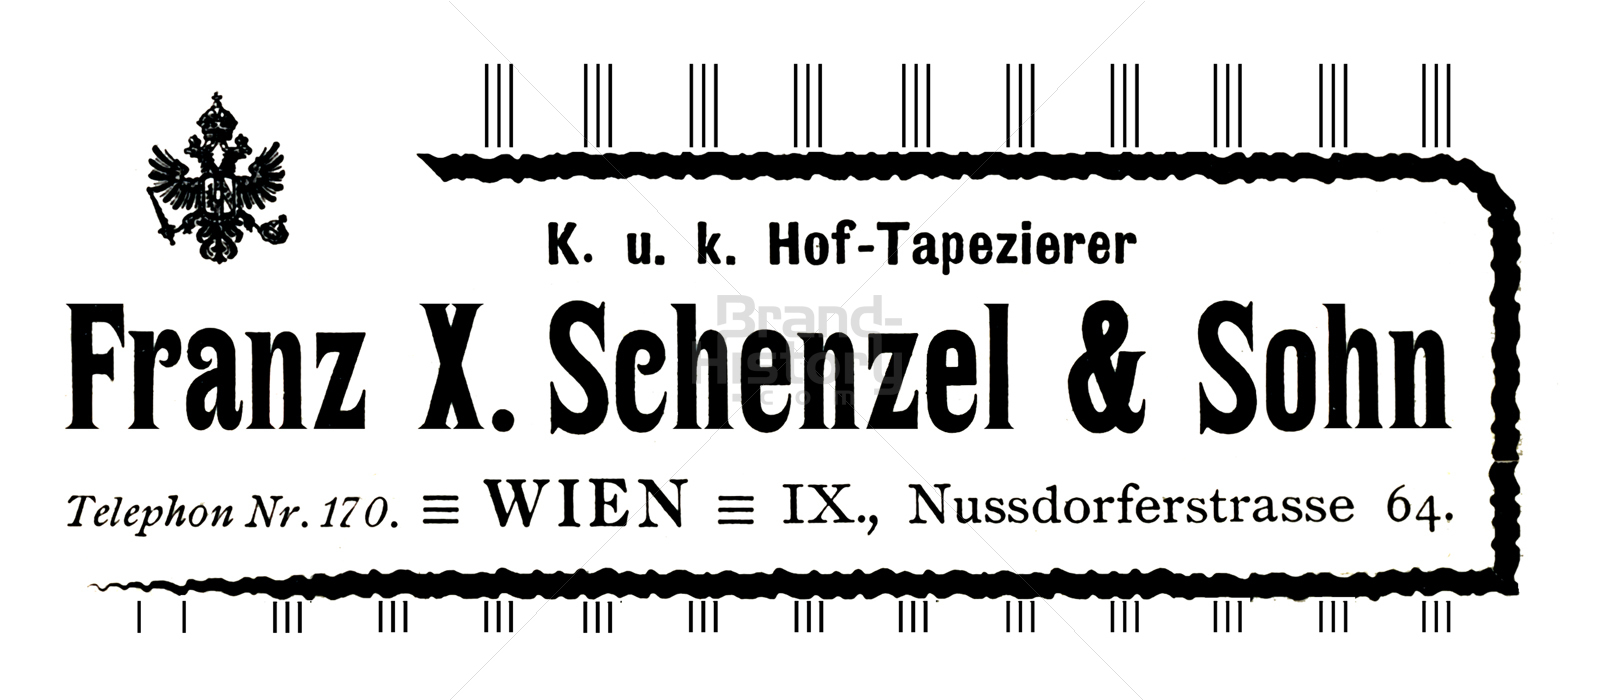 Franz X. Schenzel & Sohn